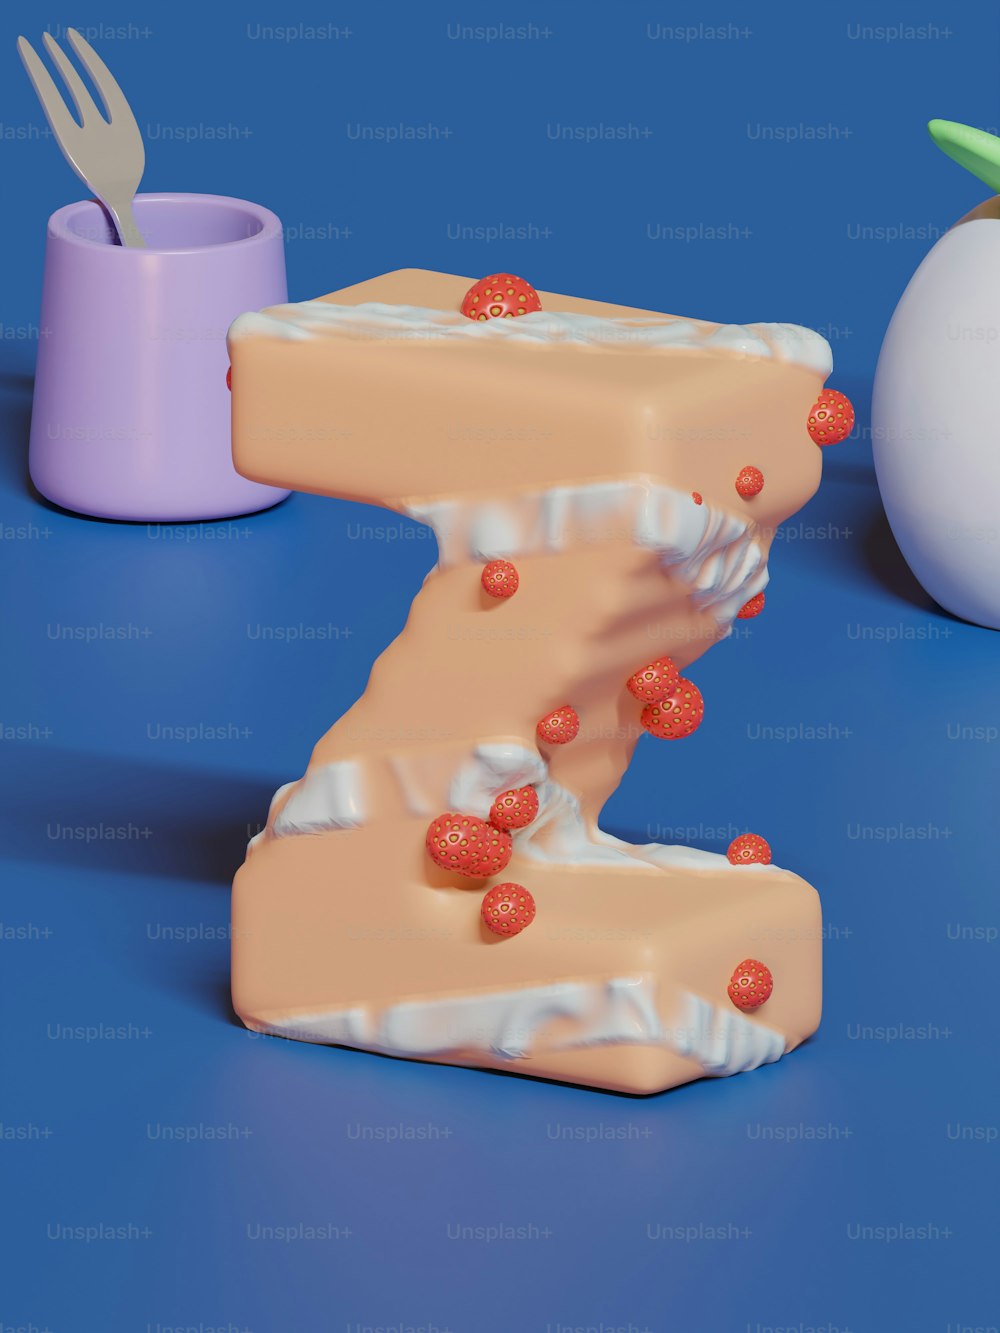 Una torta a forma di lettera Z accanto a un uovo